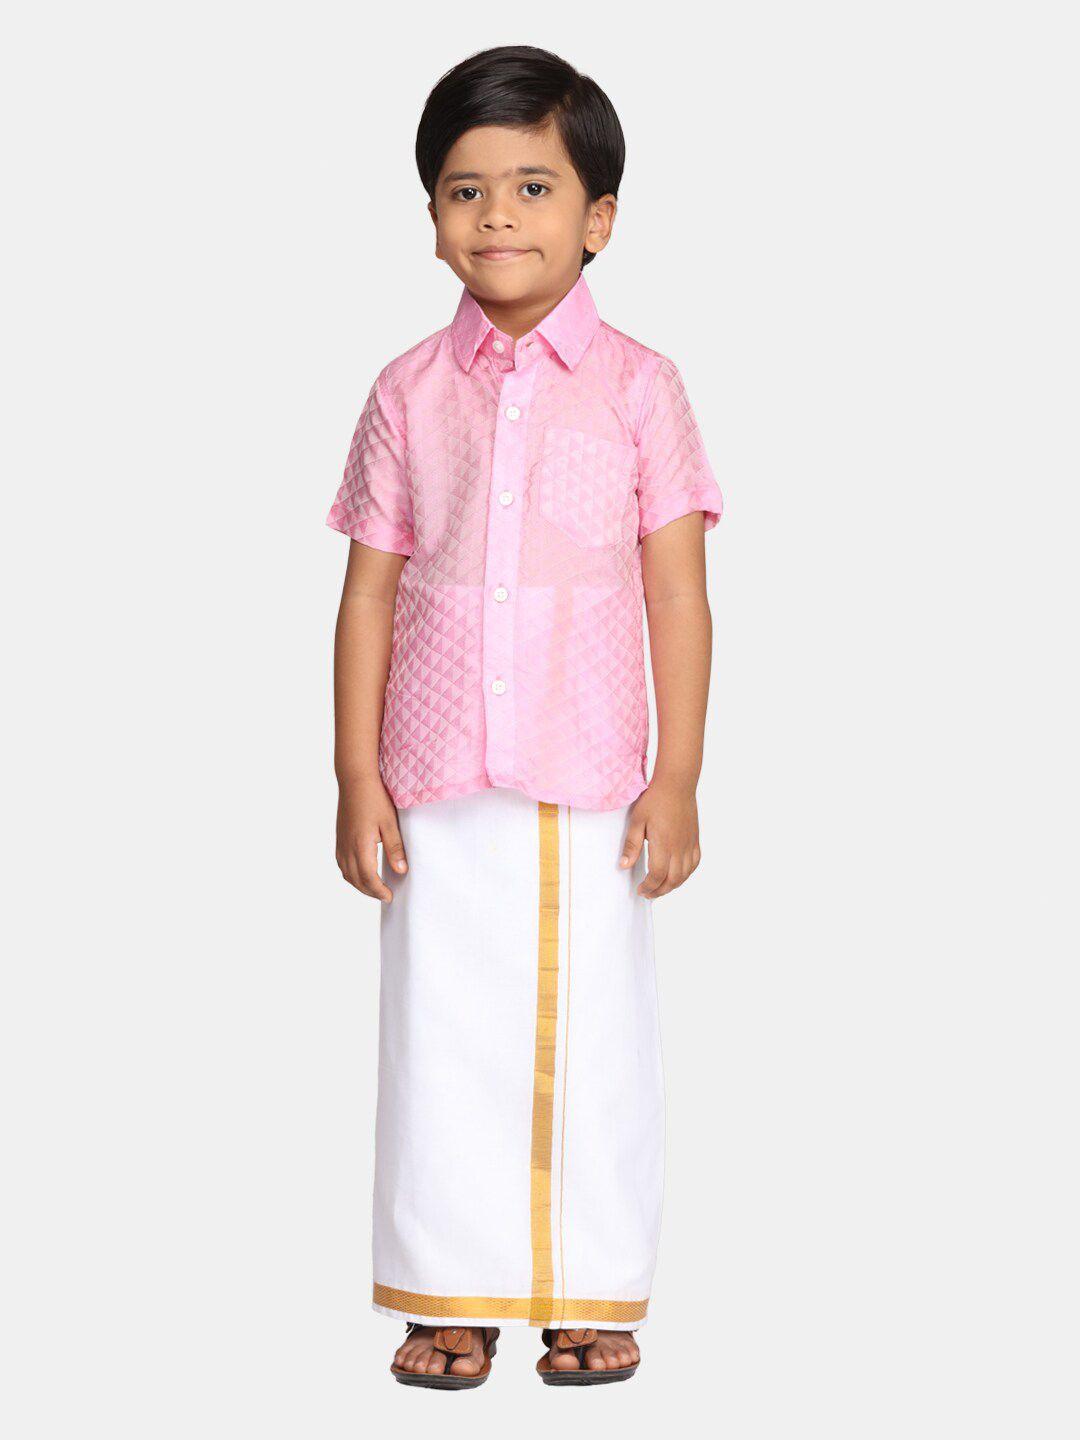 Sethukrishna Boys Ethnic Shirt with Readymade Veshti Clothing Set